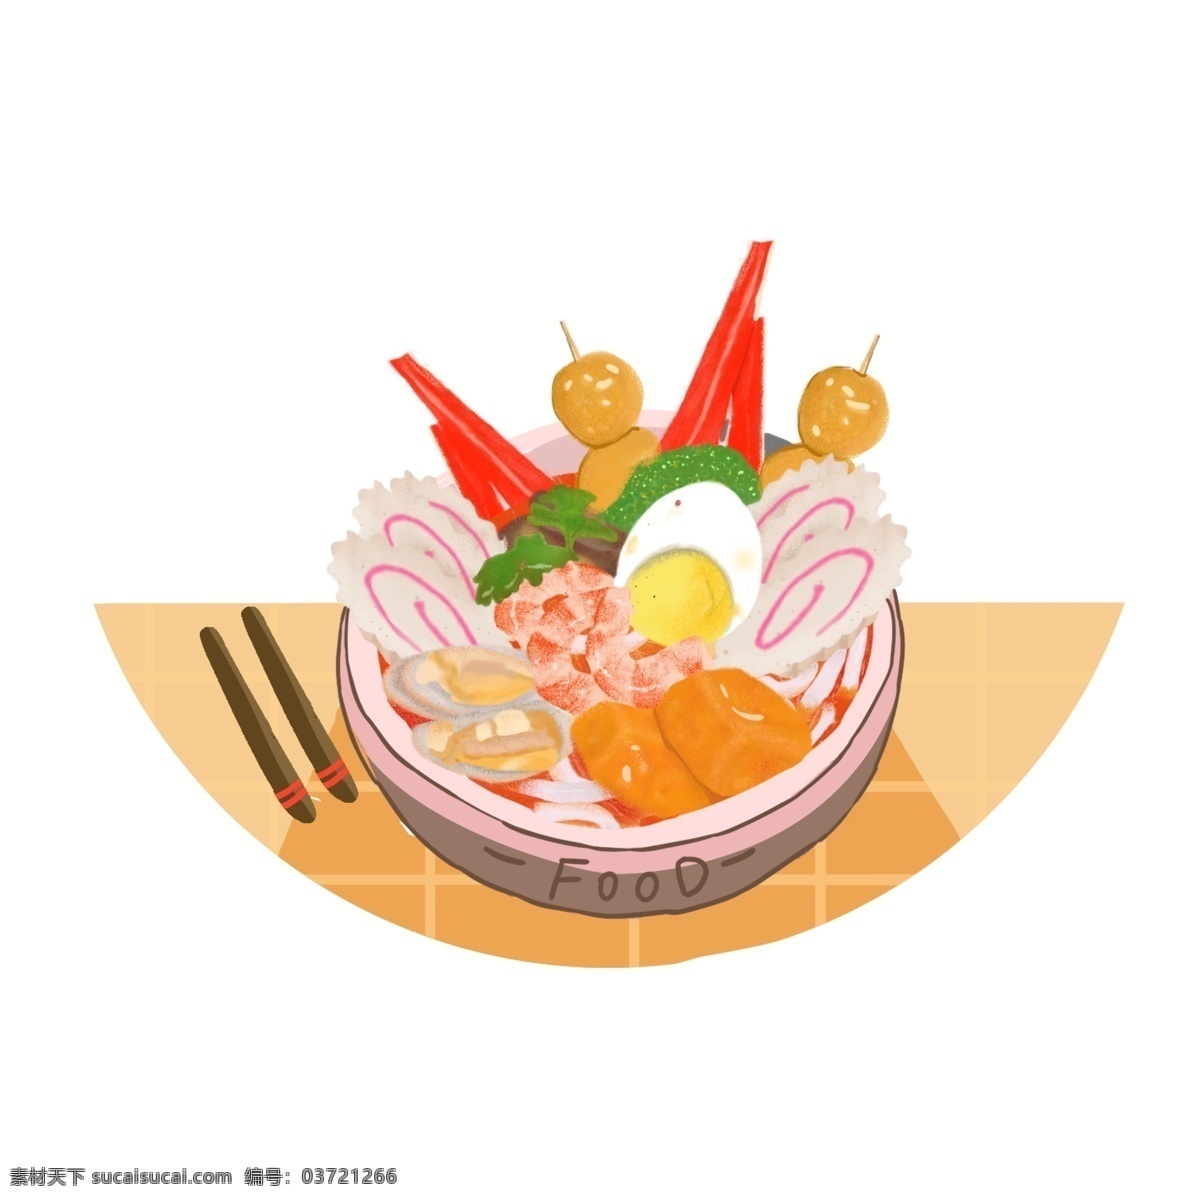 美食 食物 火锅 麻辣烫 手绘 卡通 可爱 元素 鸡蛋 虾 丸子 豆腐